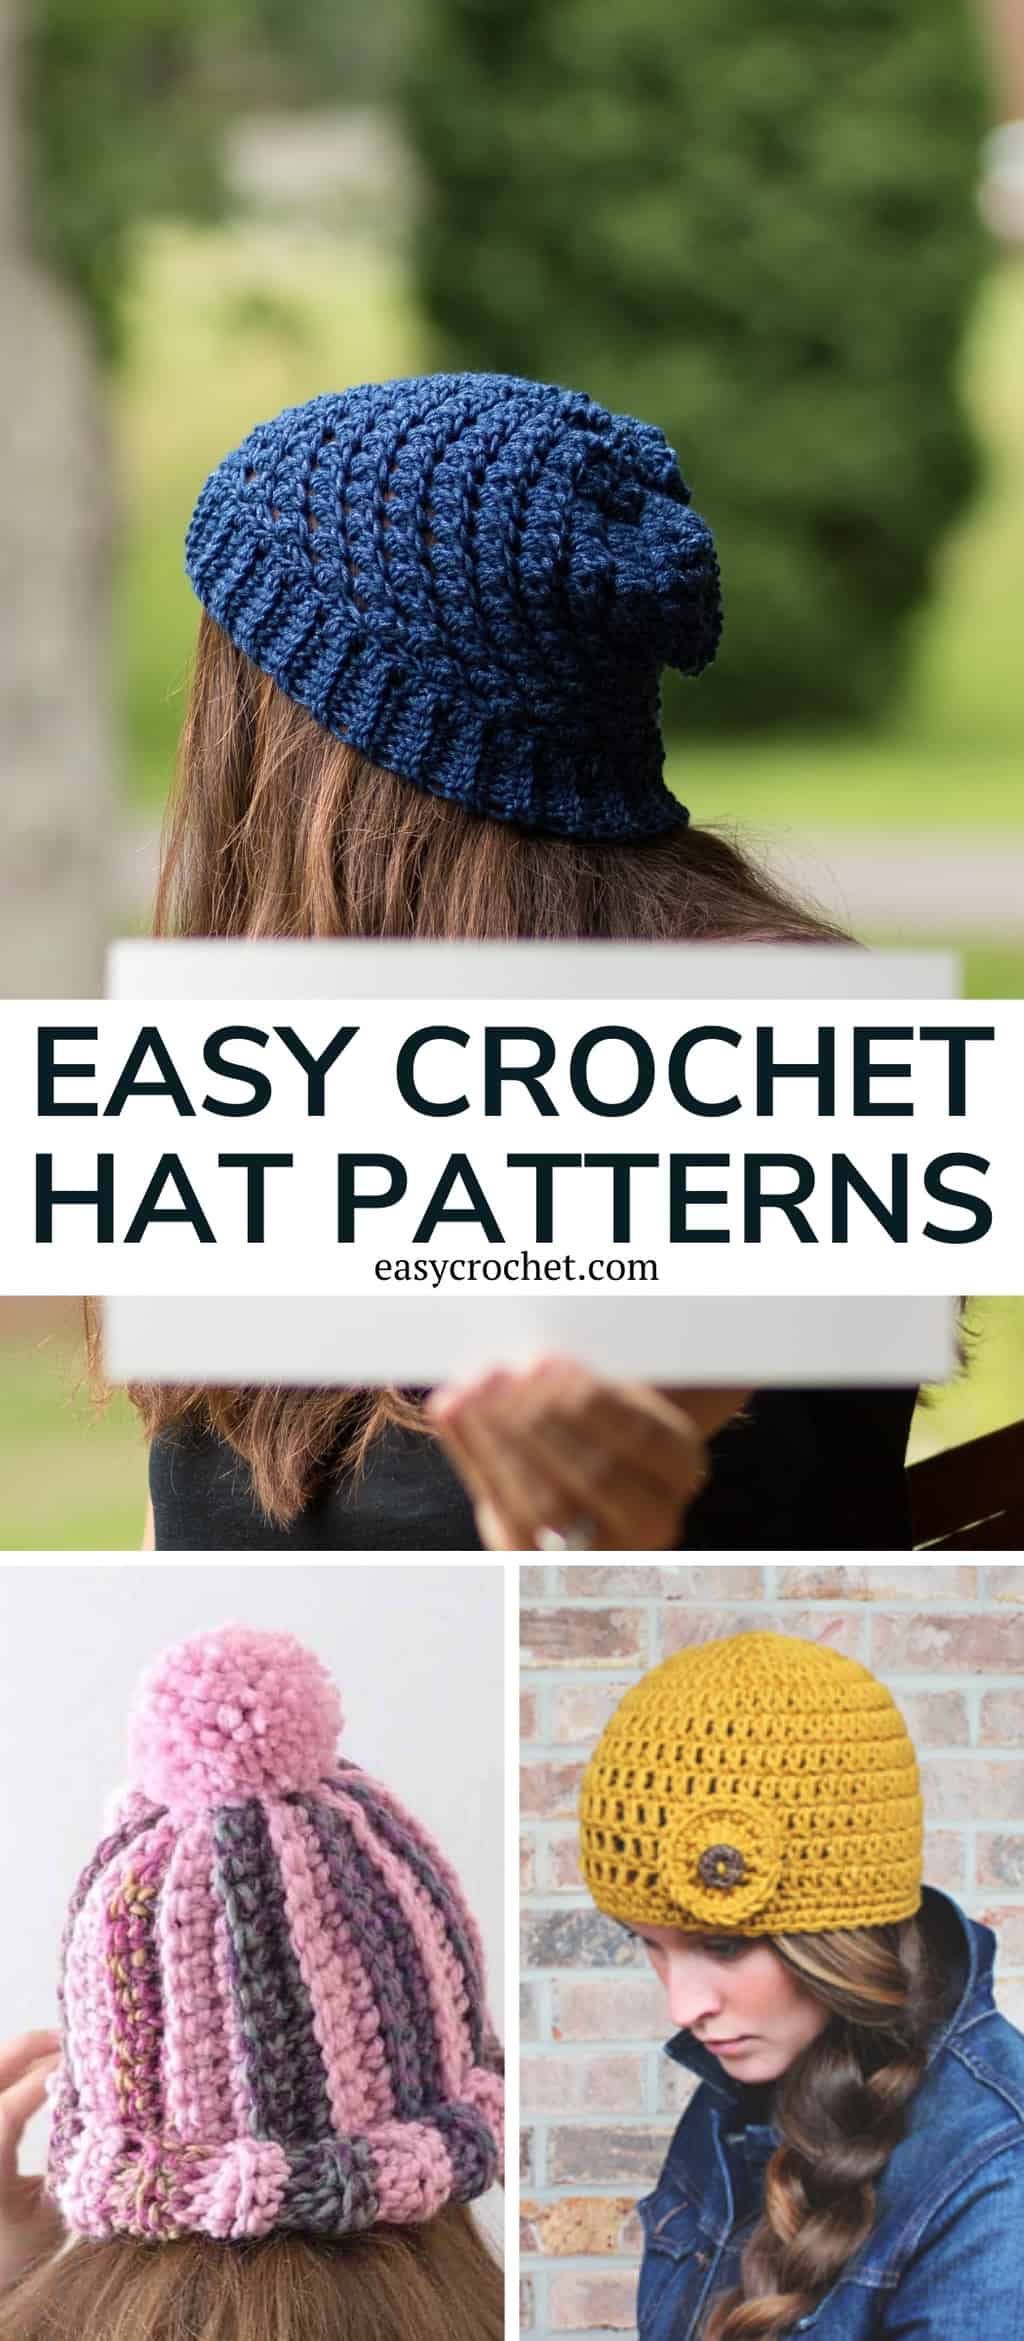 Easy crochet hat patterns